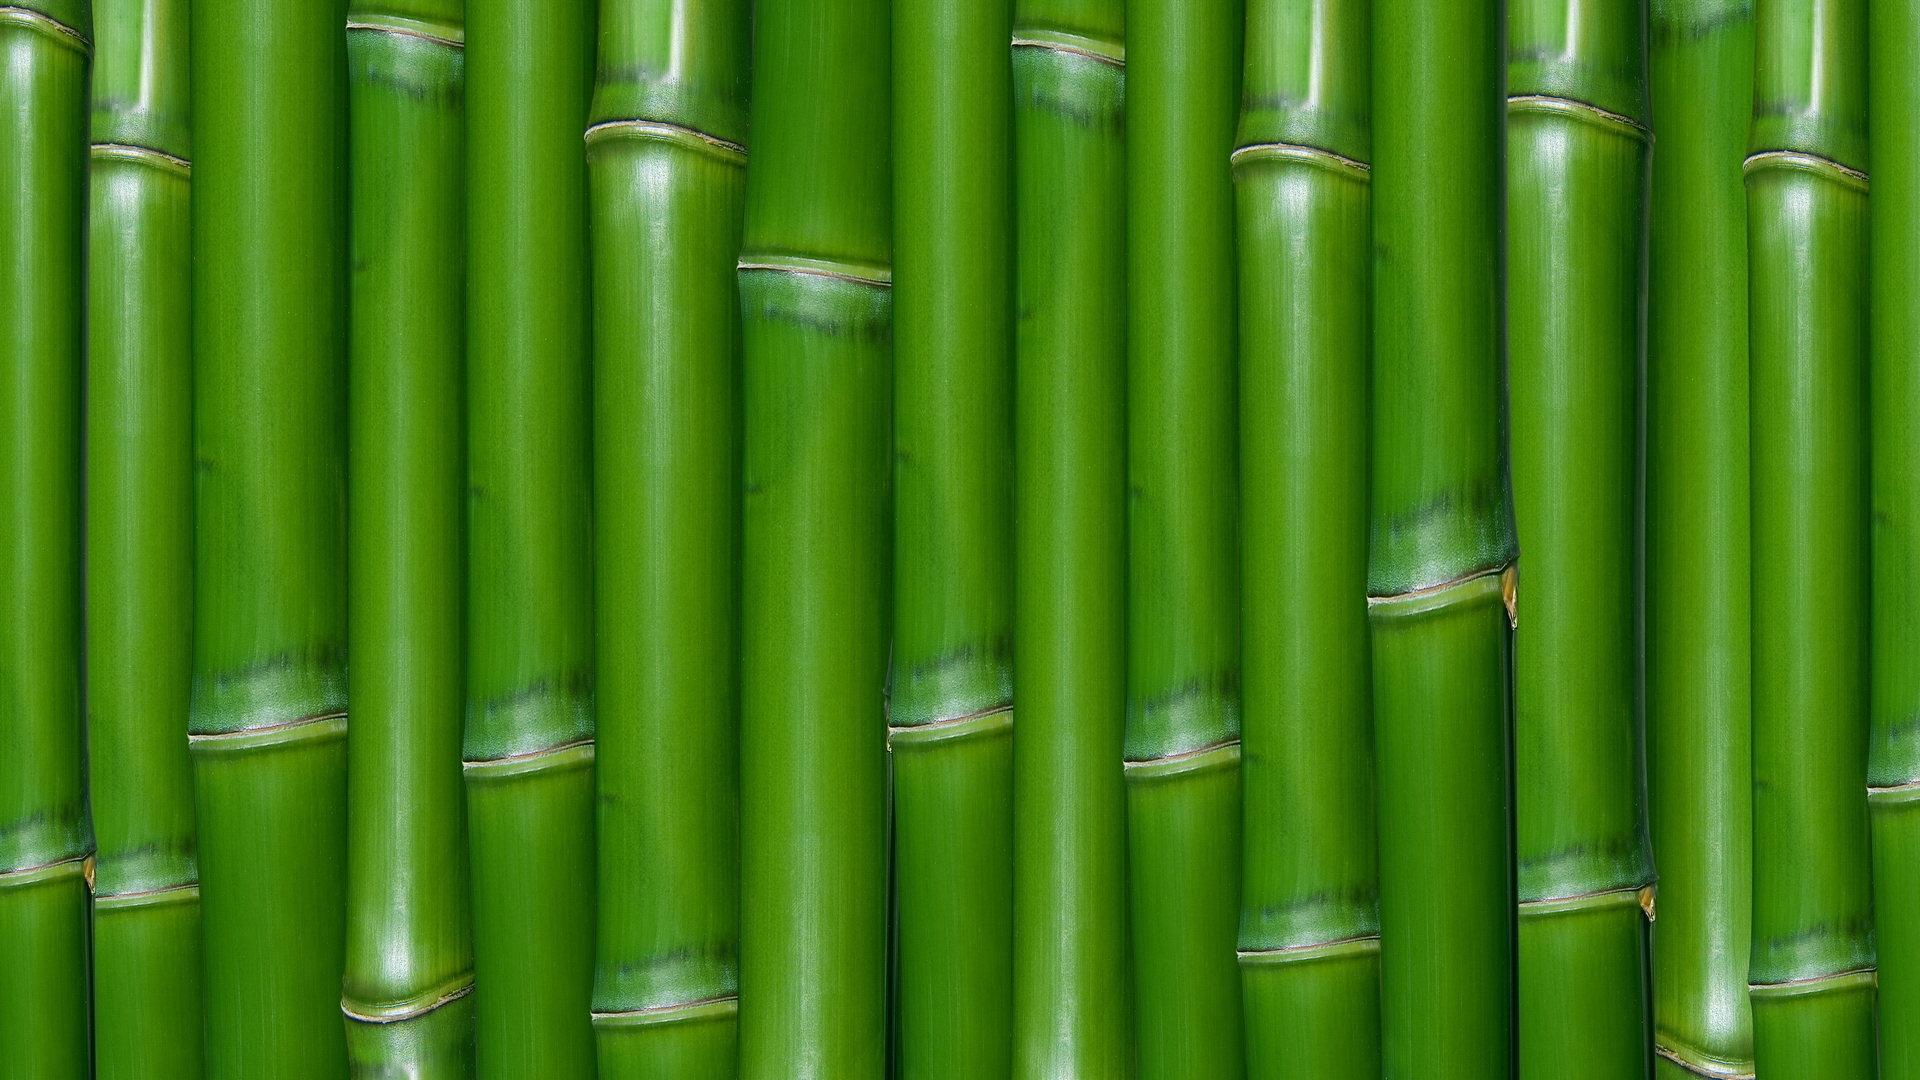 green bamboo, texture bamboo , green bamboo texture, photo, background